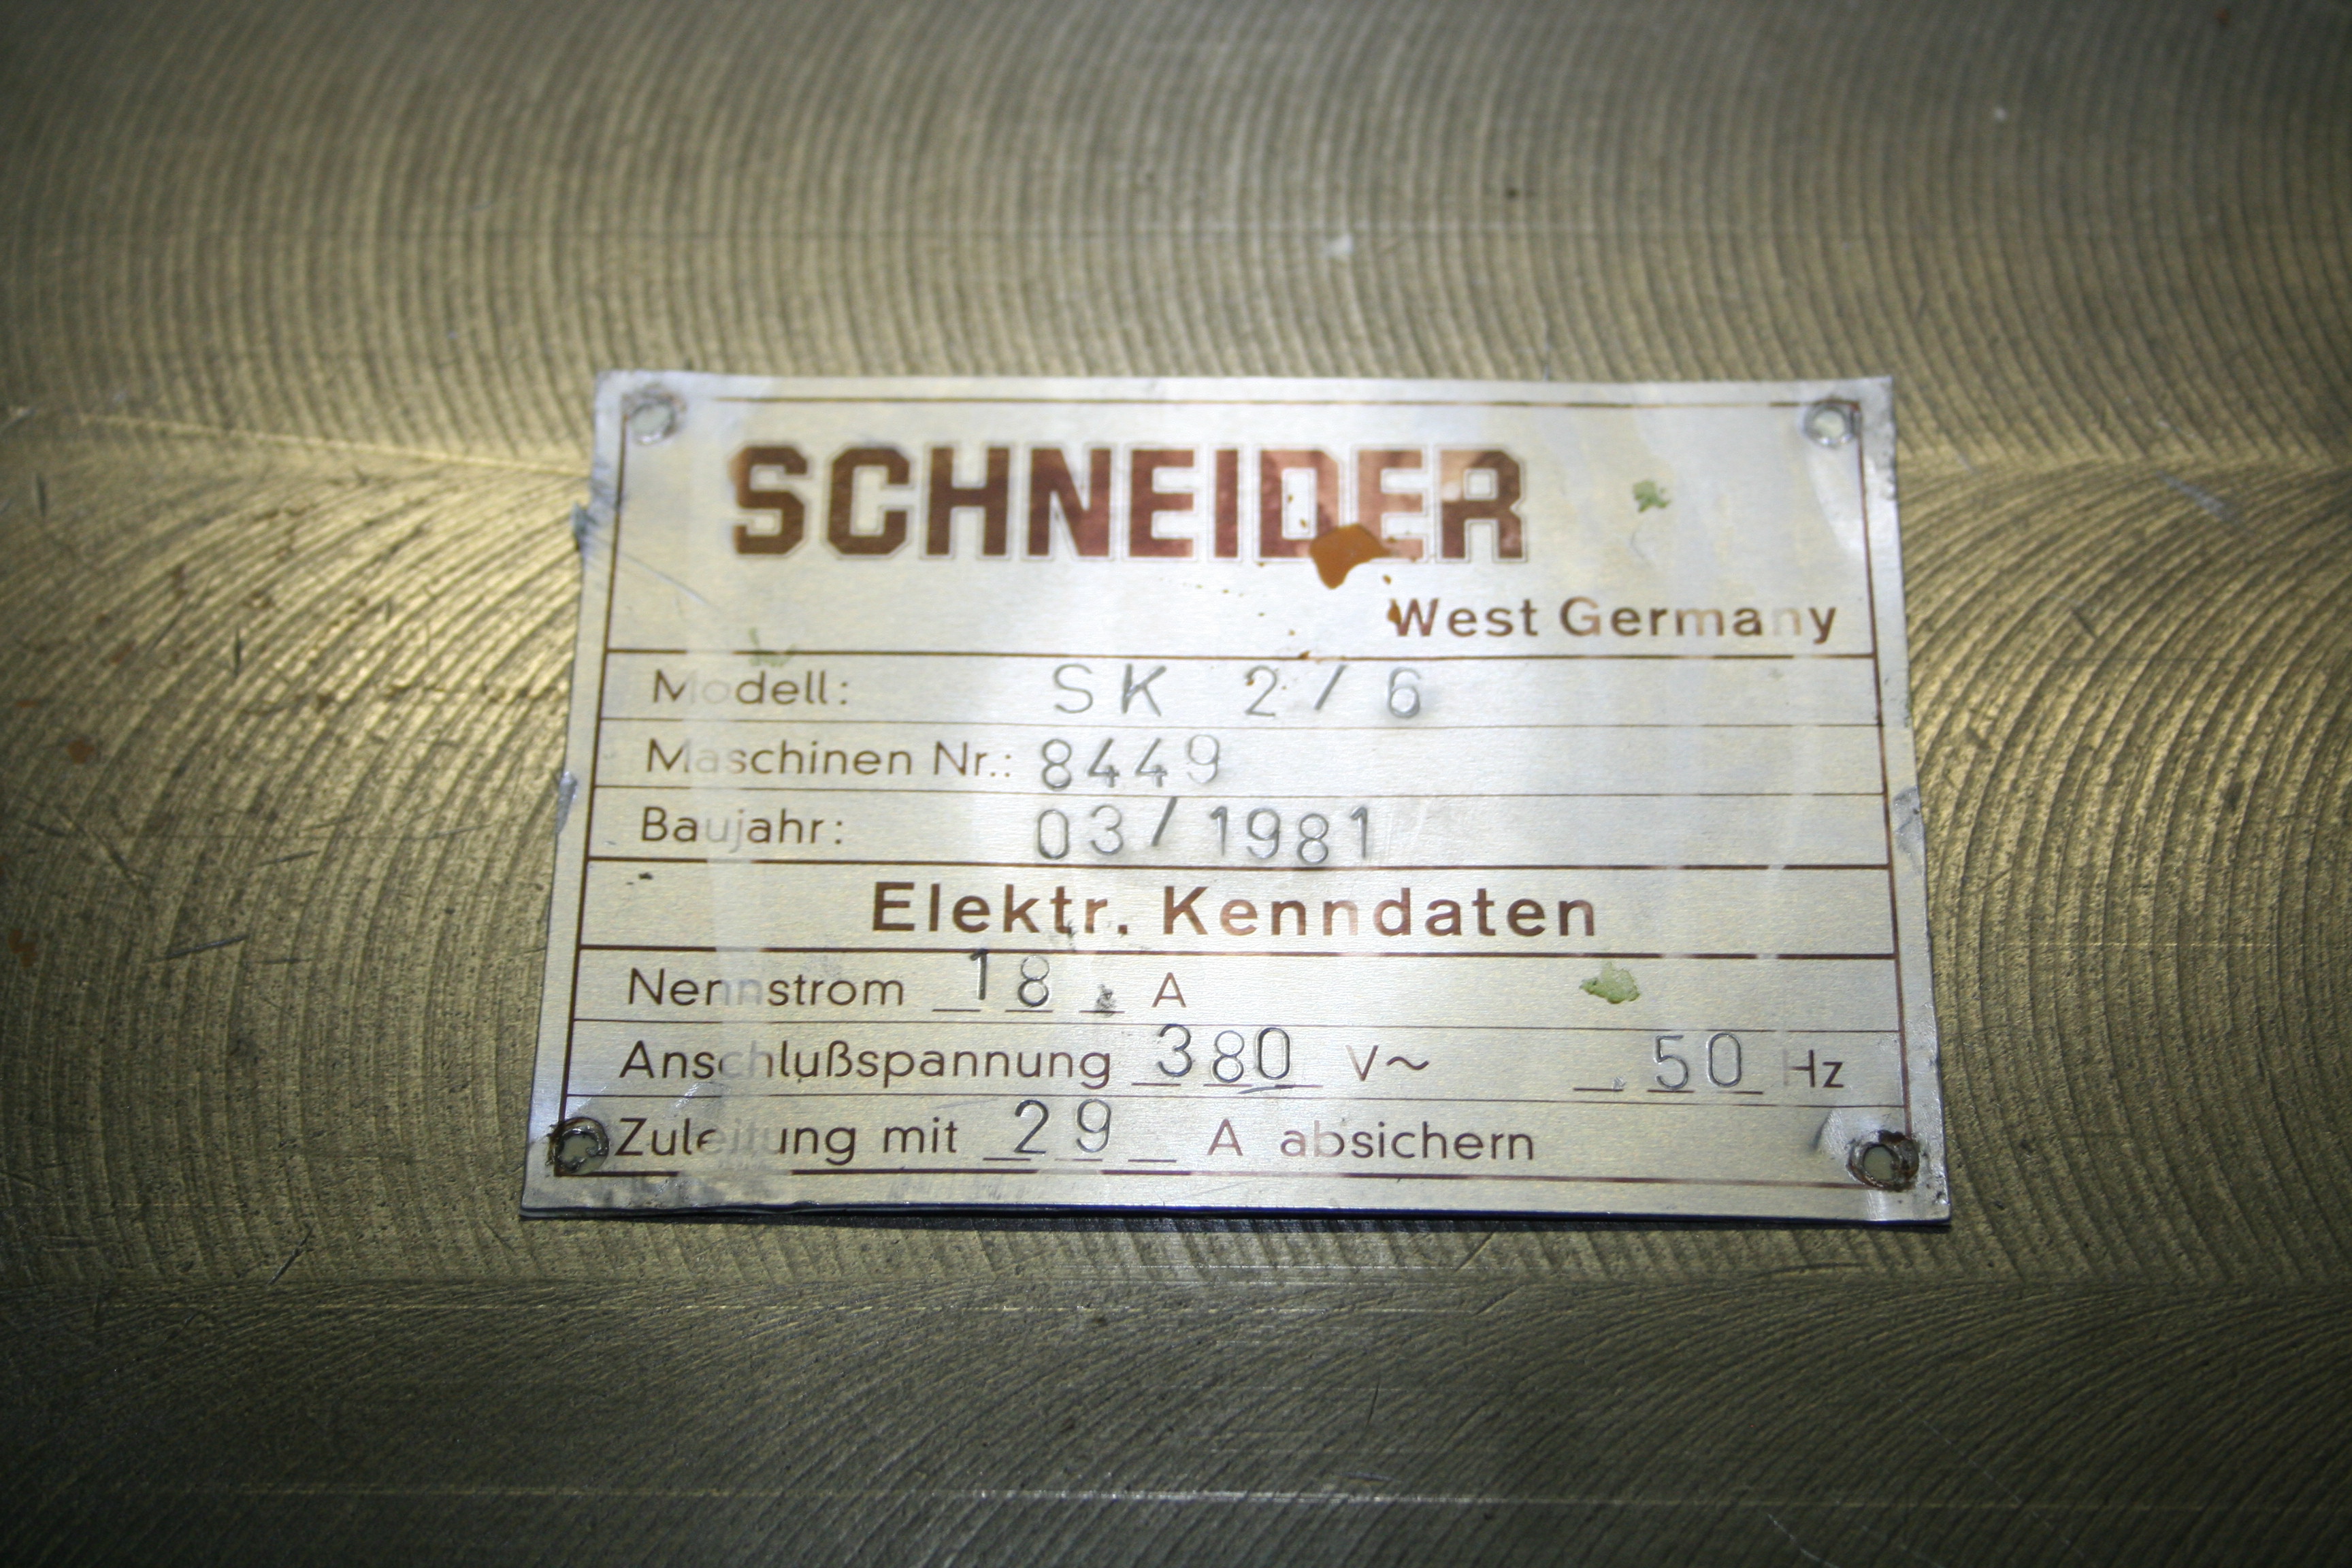 Schneider SK 2/6